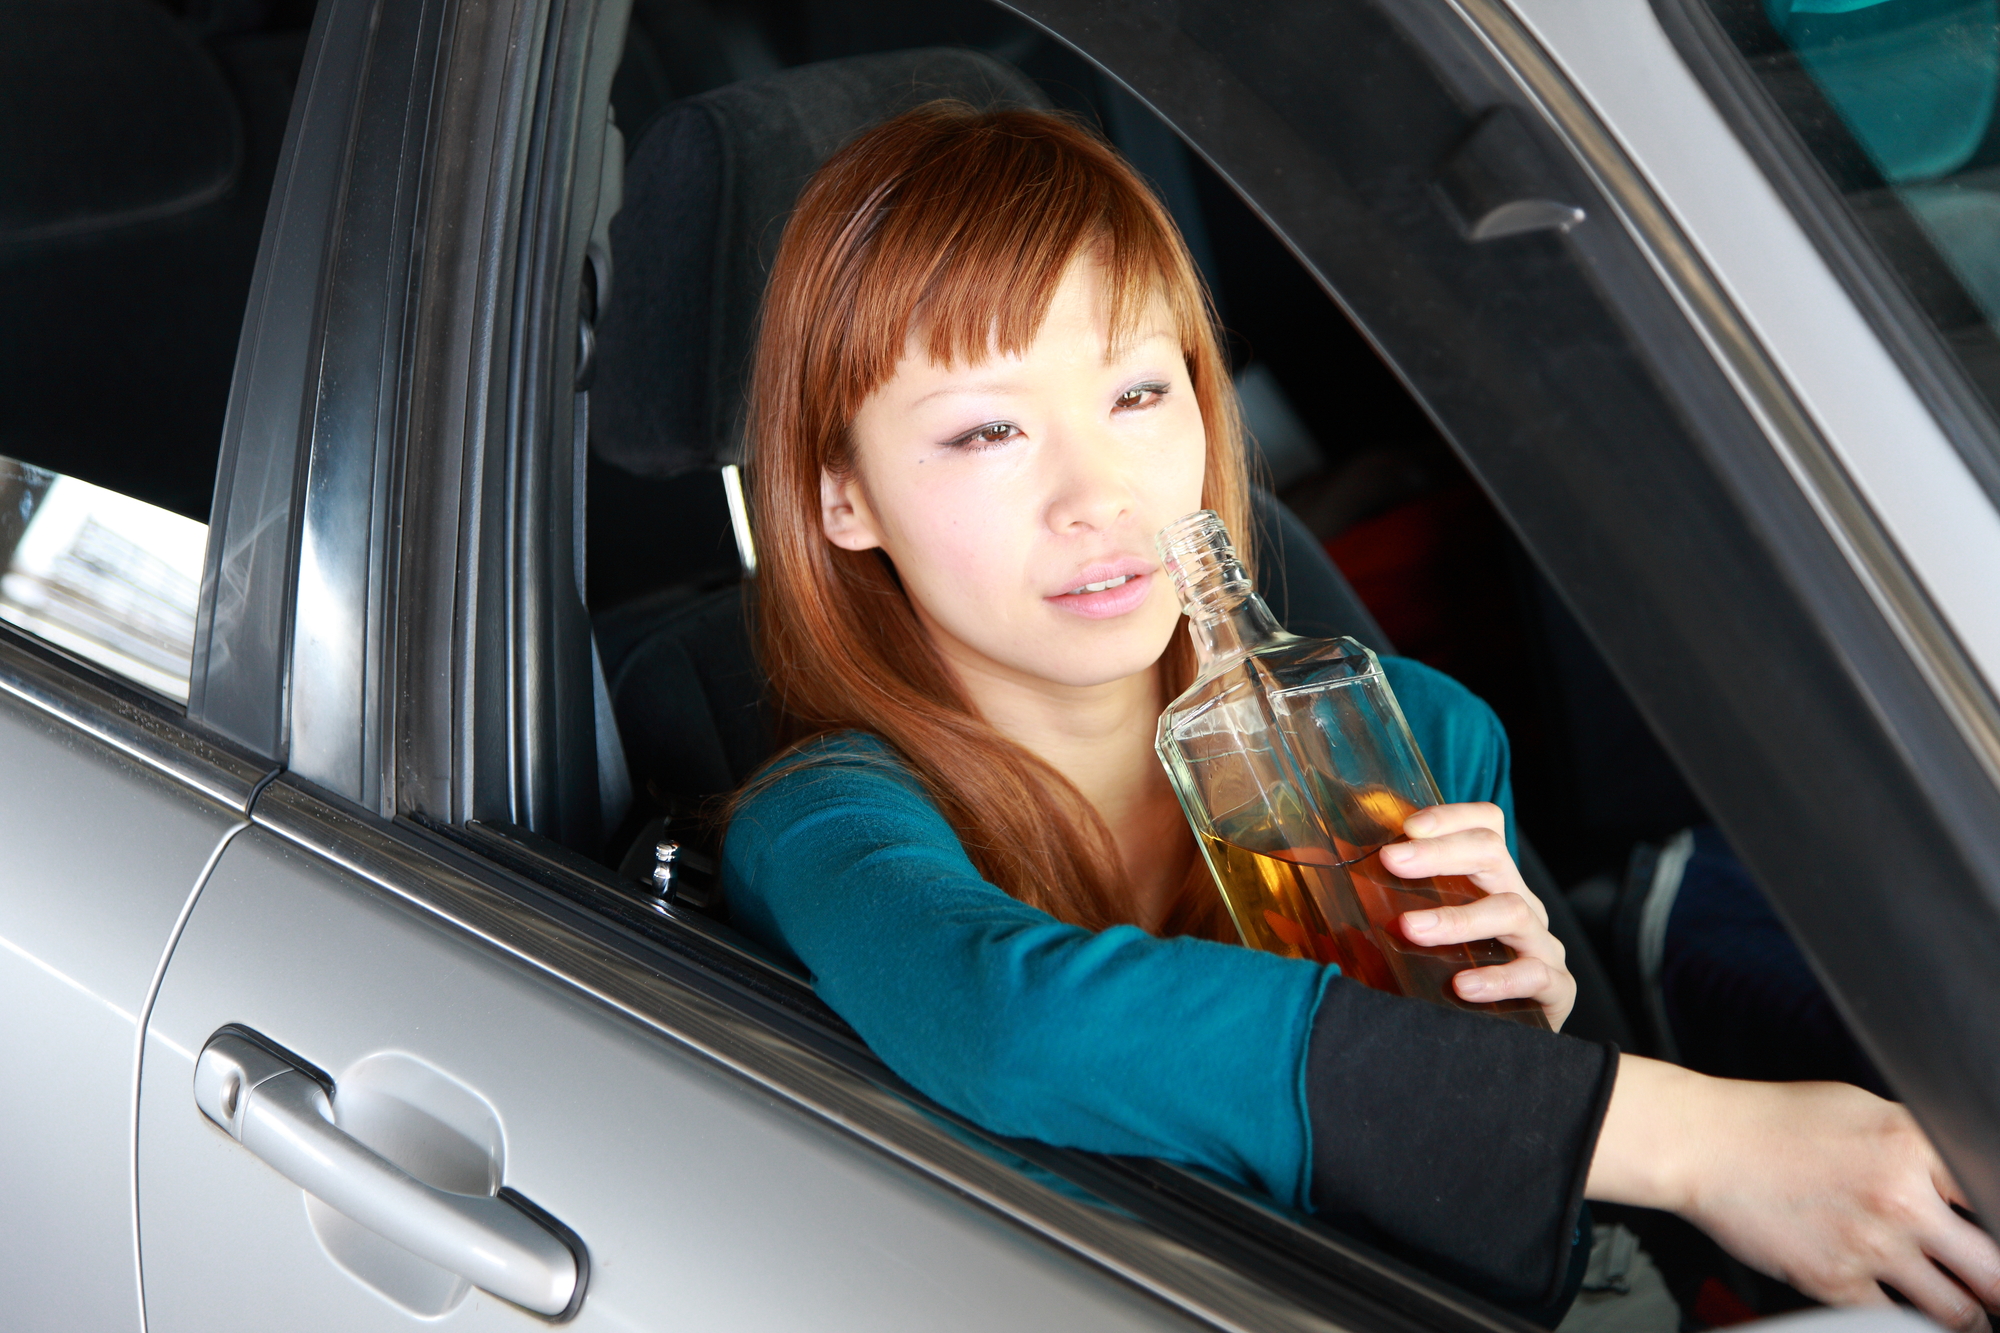 アルコール1 の飲料を飲んで運転 酔ってなくても違法になる シェアしたくなる法律相談所